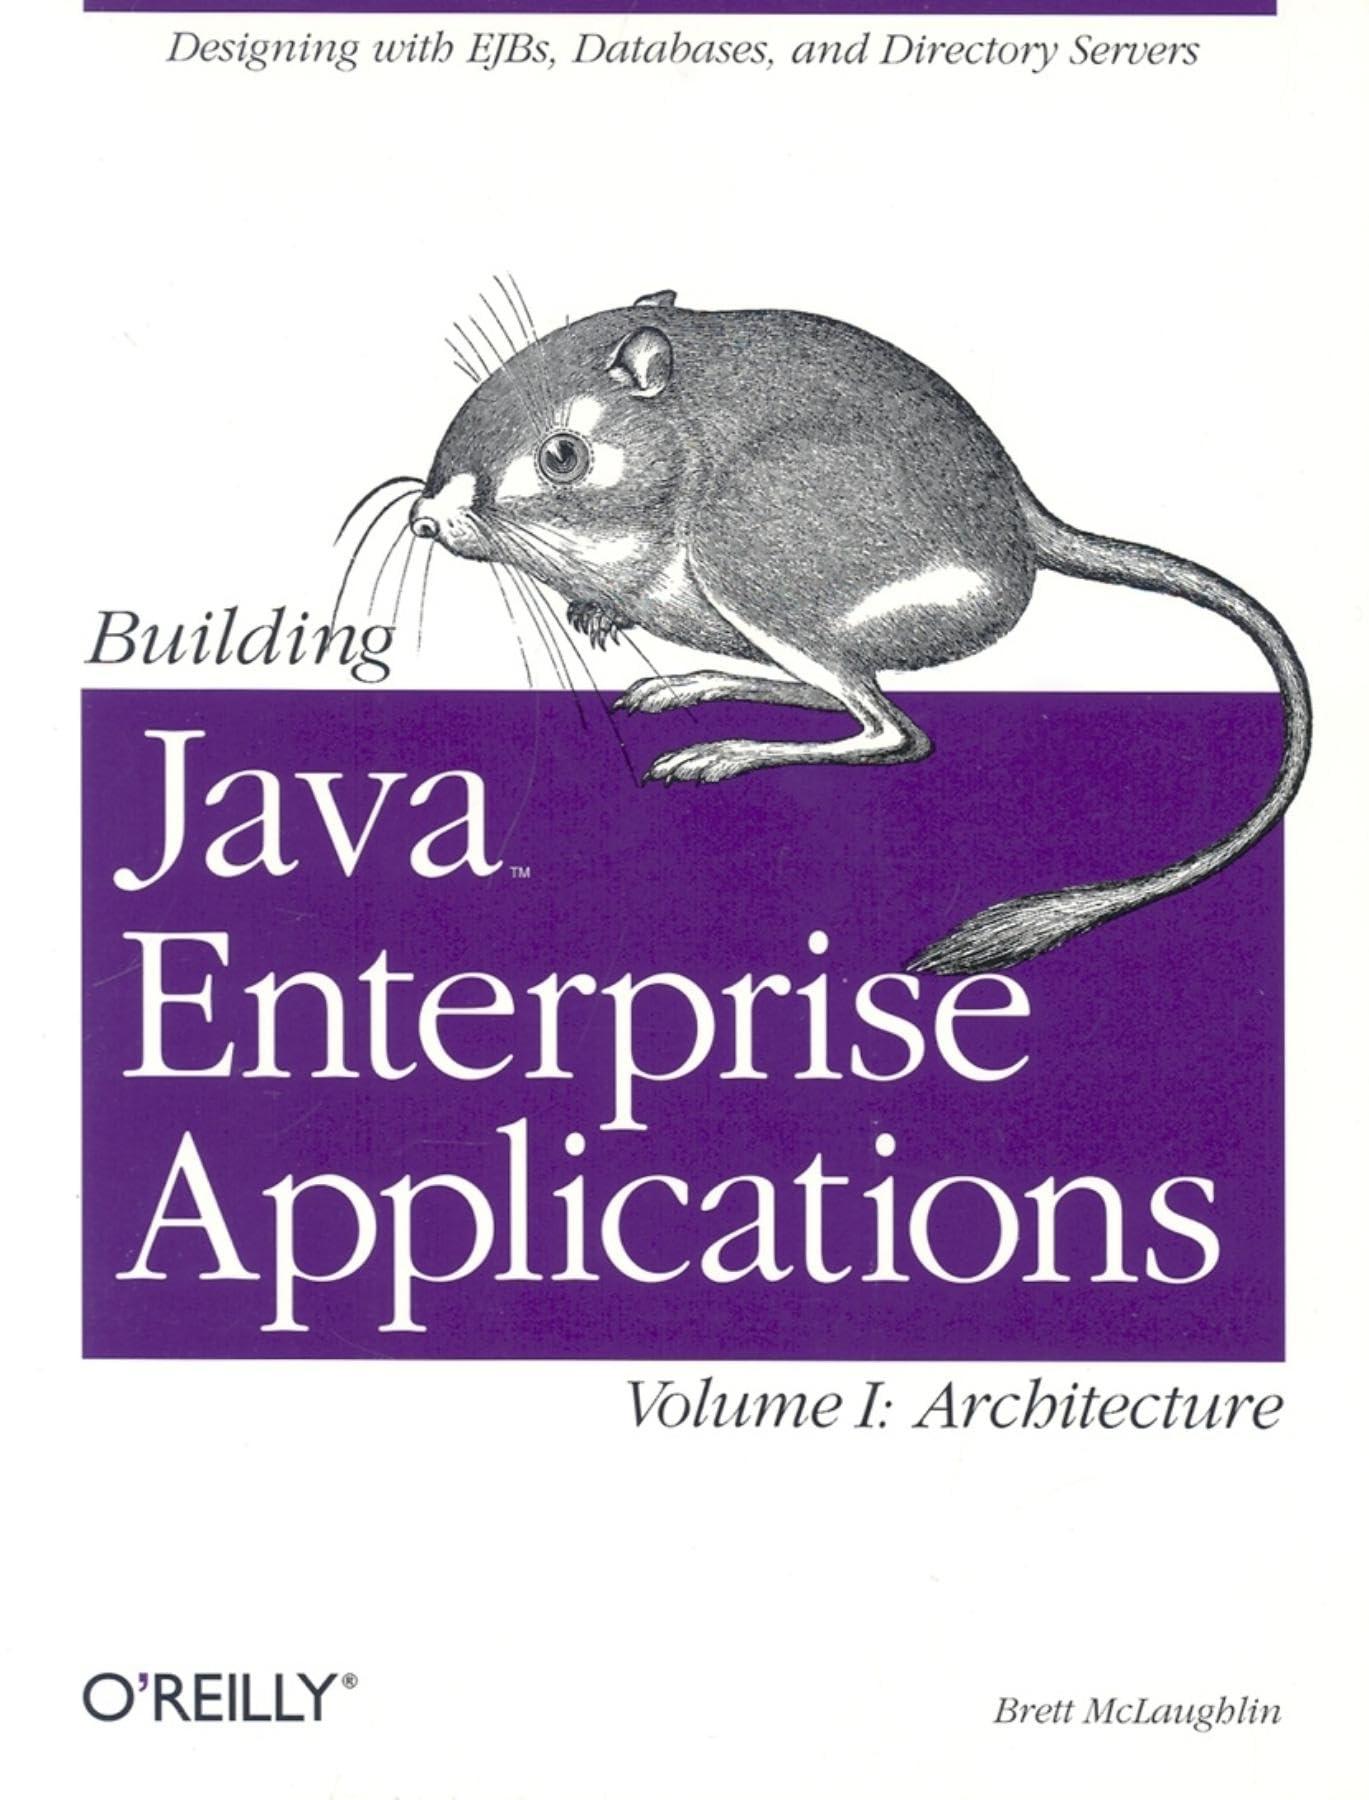 building java enterprise applications vol 1 architecture 1st edition brett mclaughlin 0596001231,